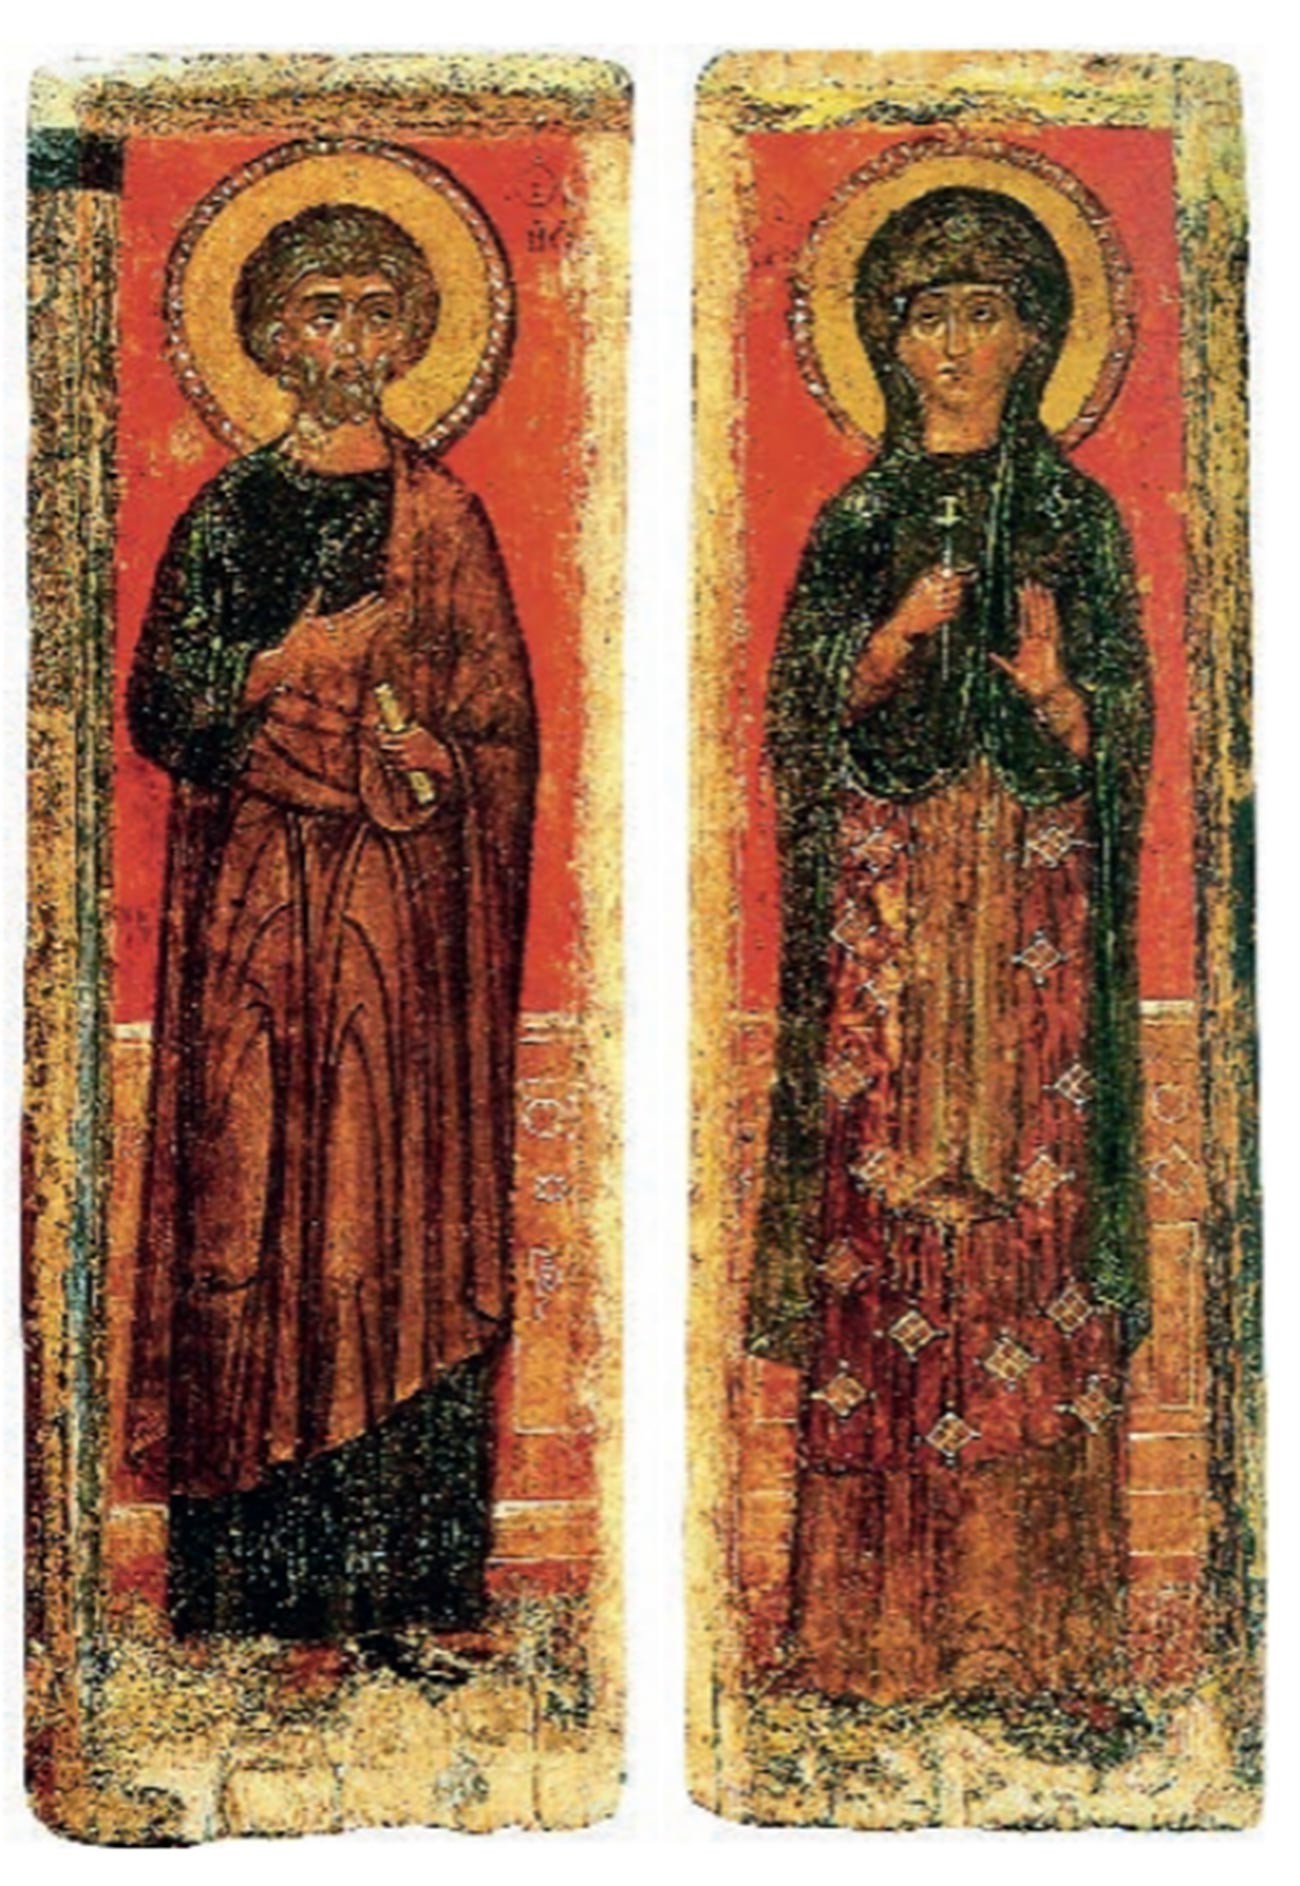 Icona dell'apostolo Pietro e del Grande Martire sconosciuto
